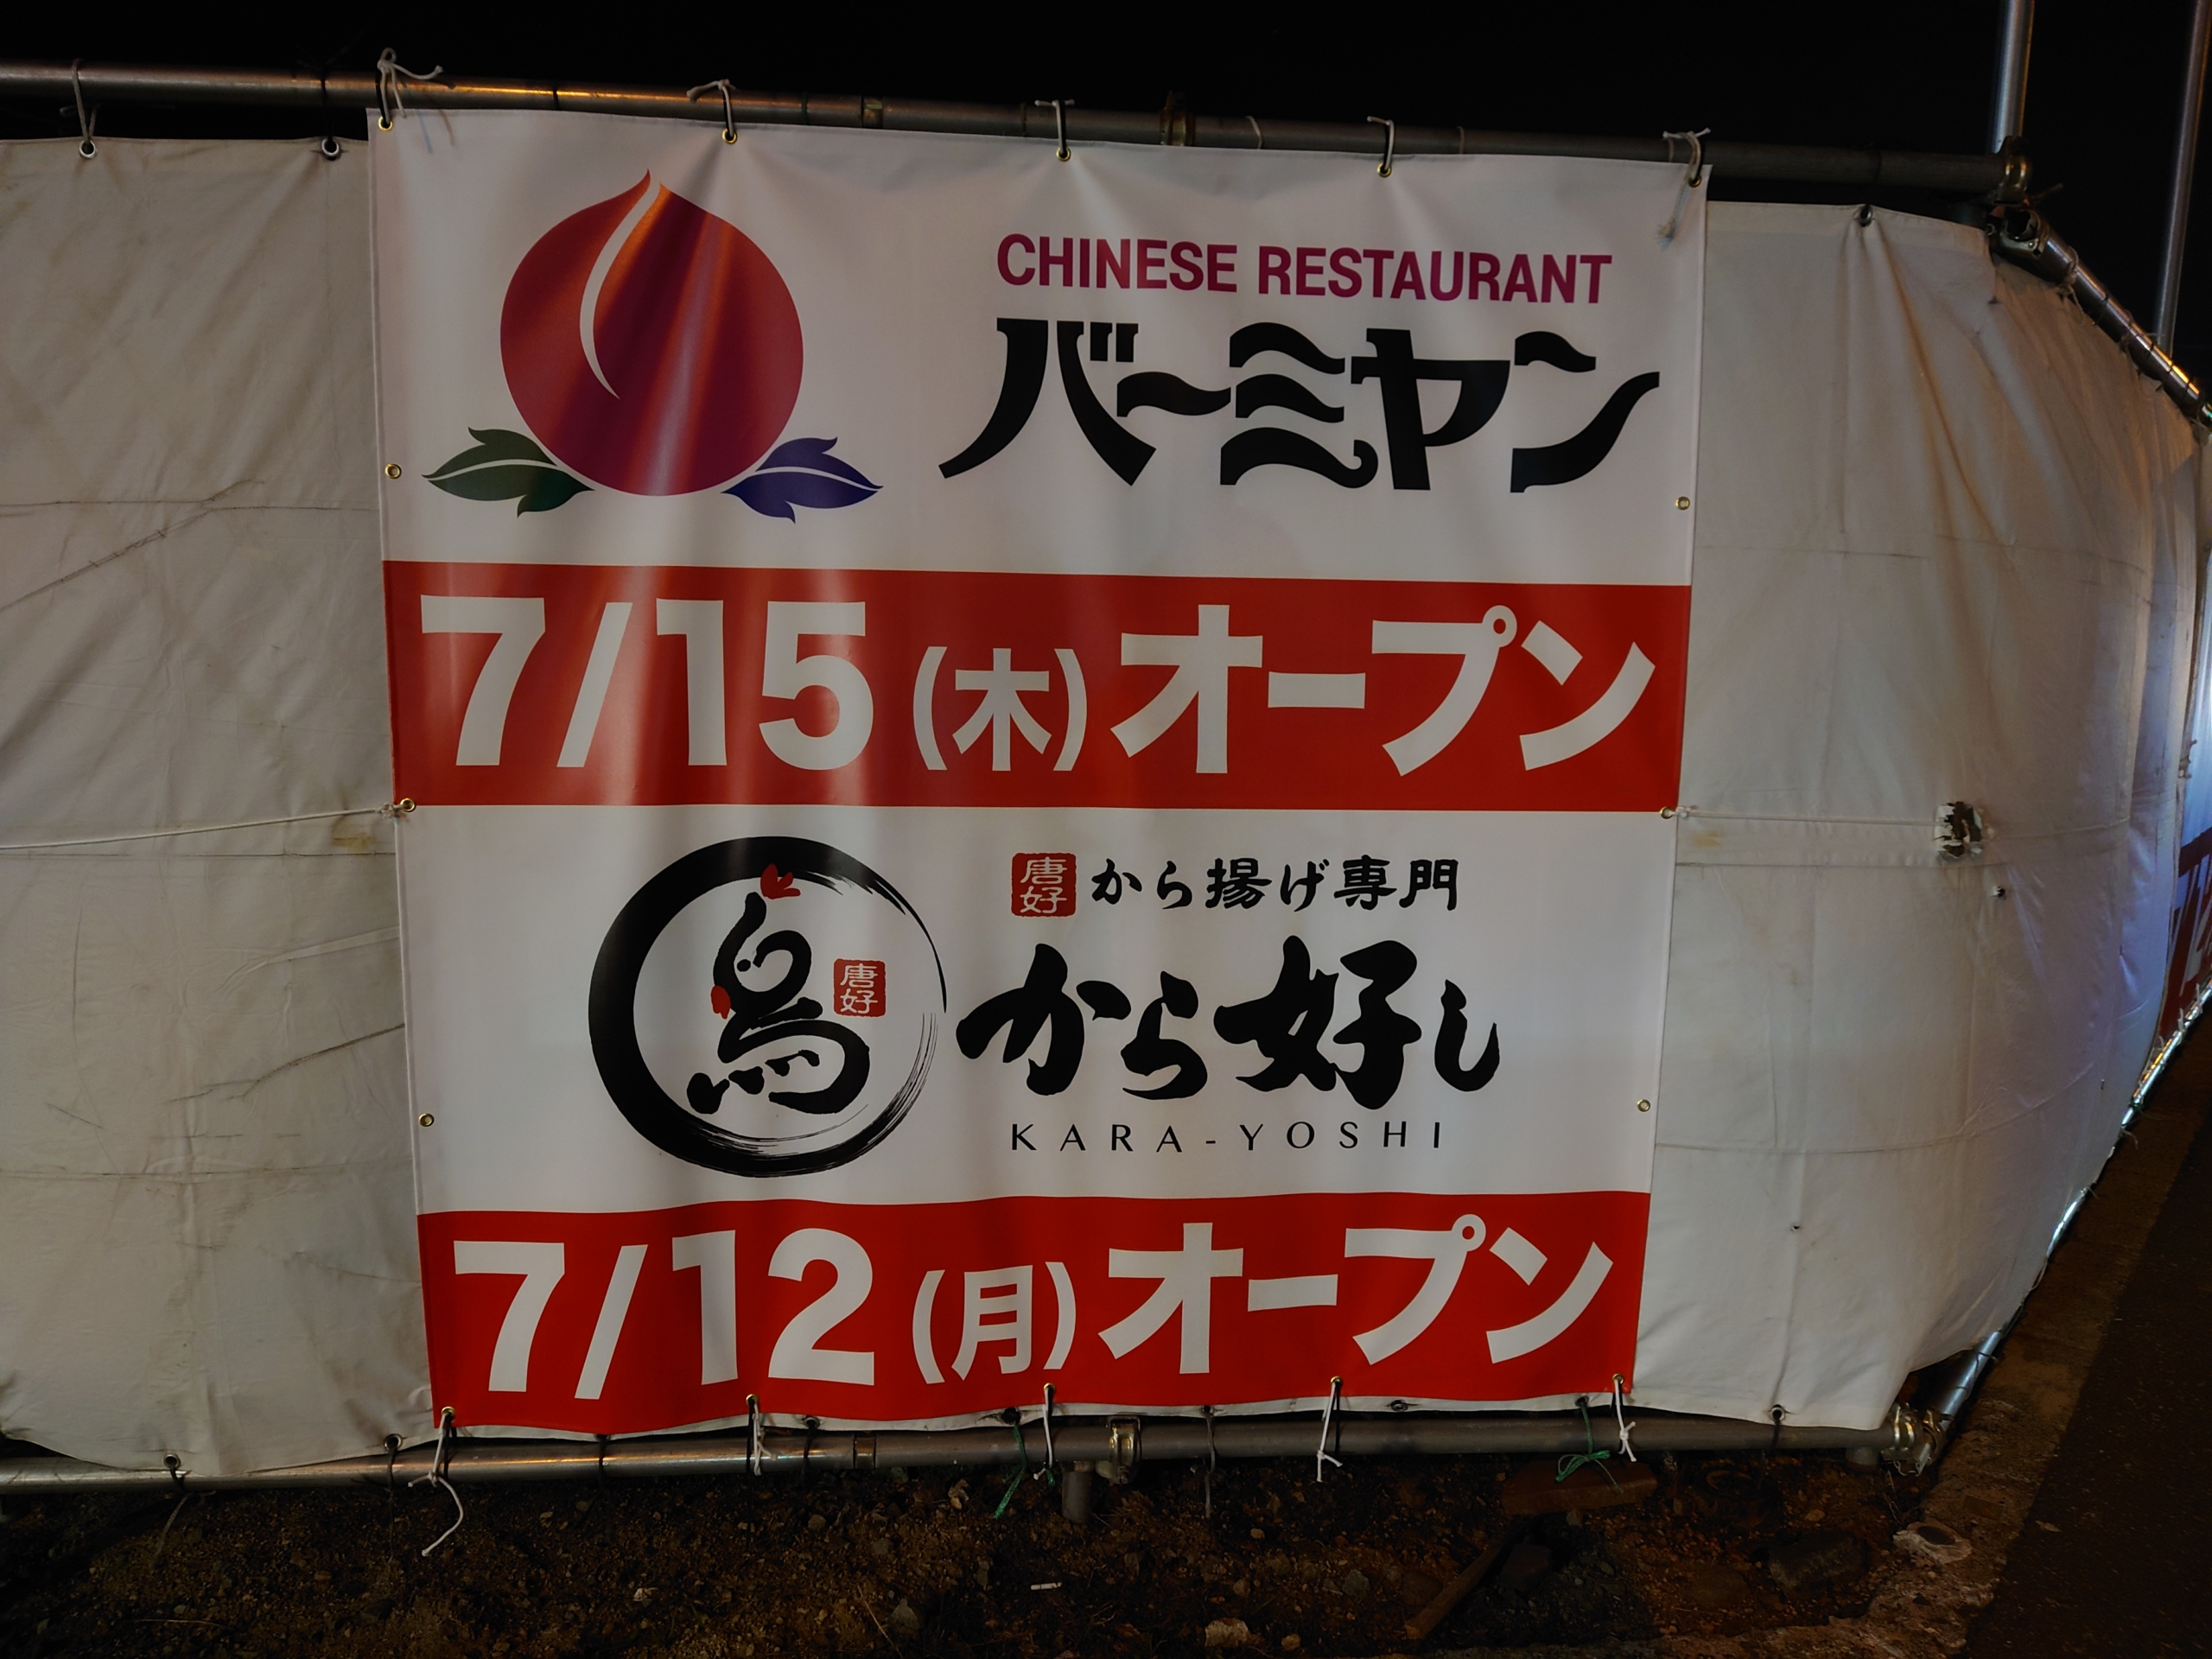 バーミヤン が札幌再上陸 白石区本通に7月15日オープン から好し も単独店として7月12日オープン 札幌速報